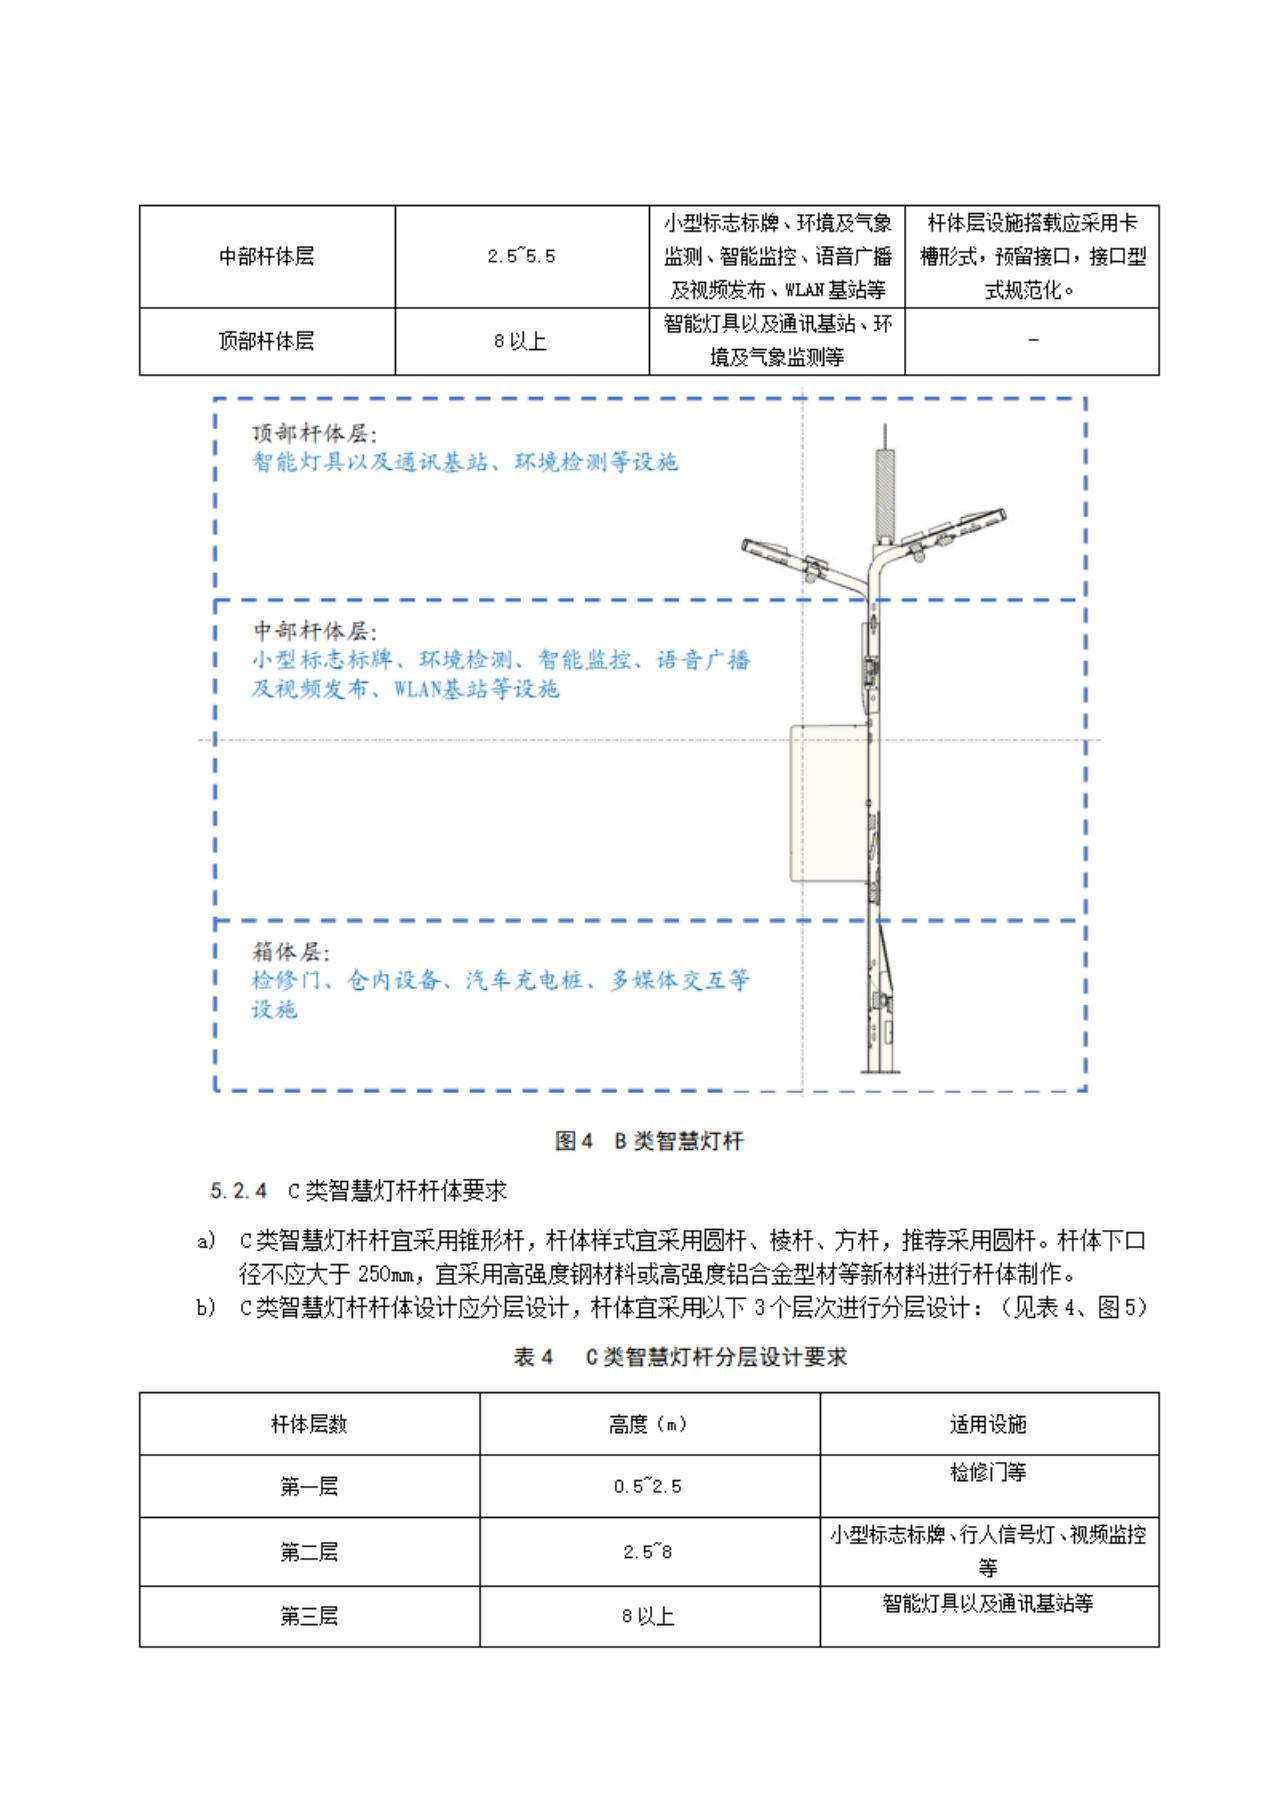 扬州市智慧灯杆应用导则（征求意见稿）_12.jpg